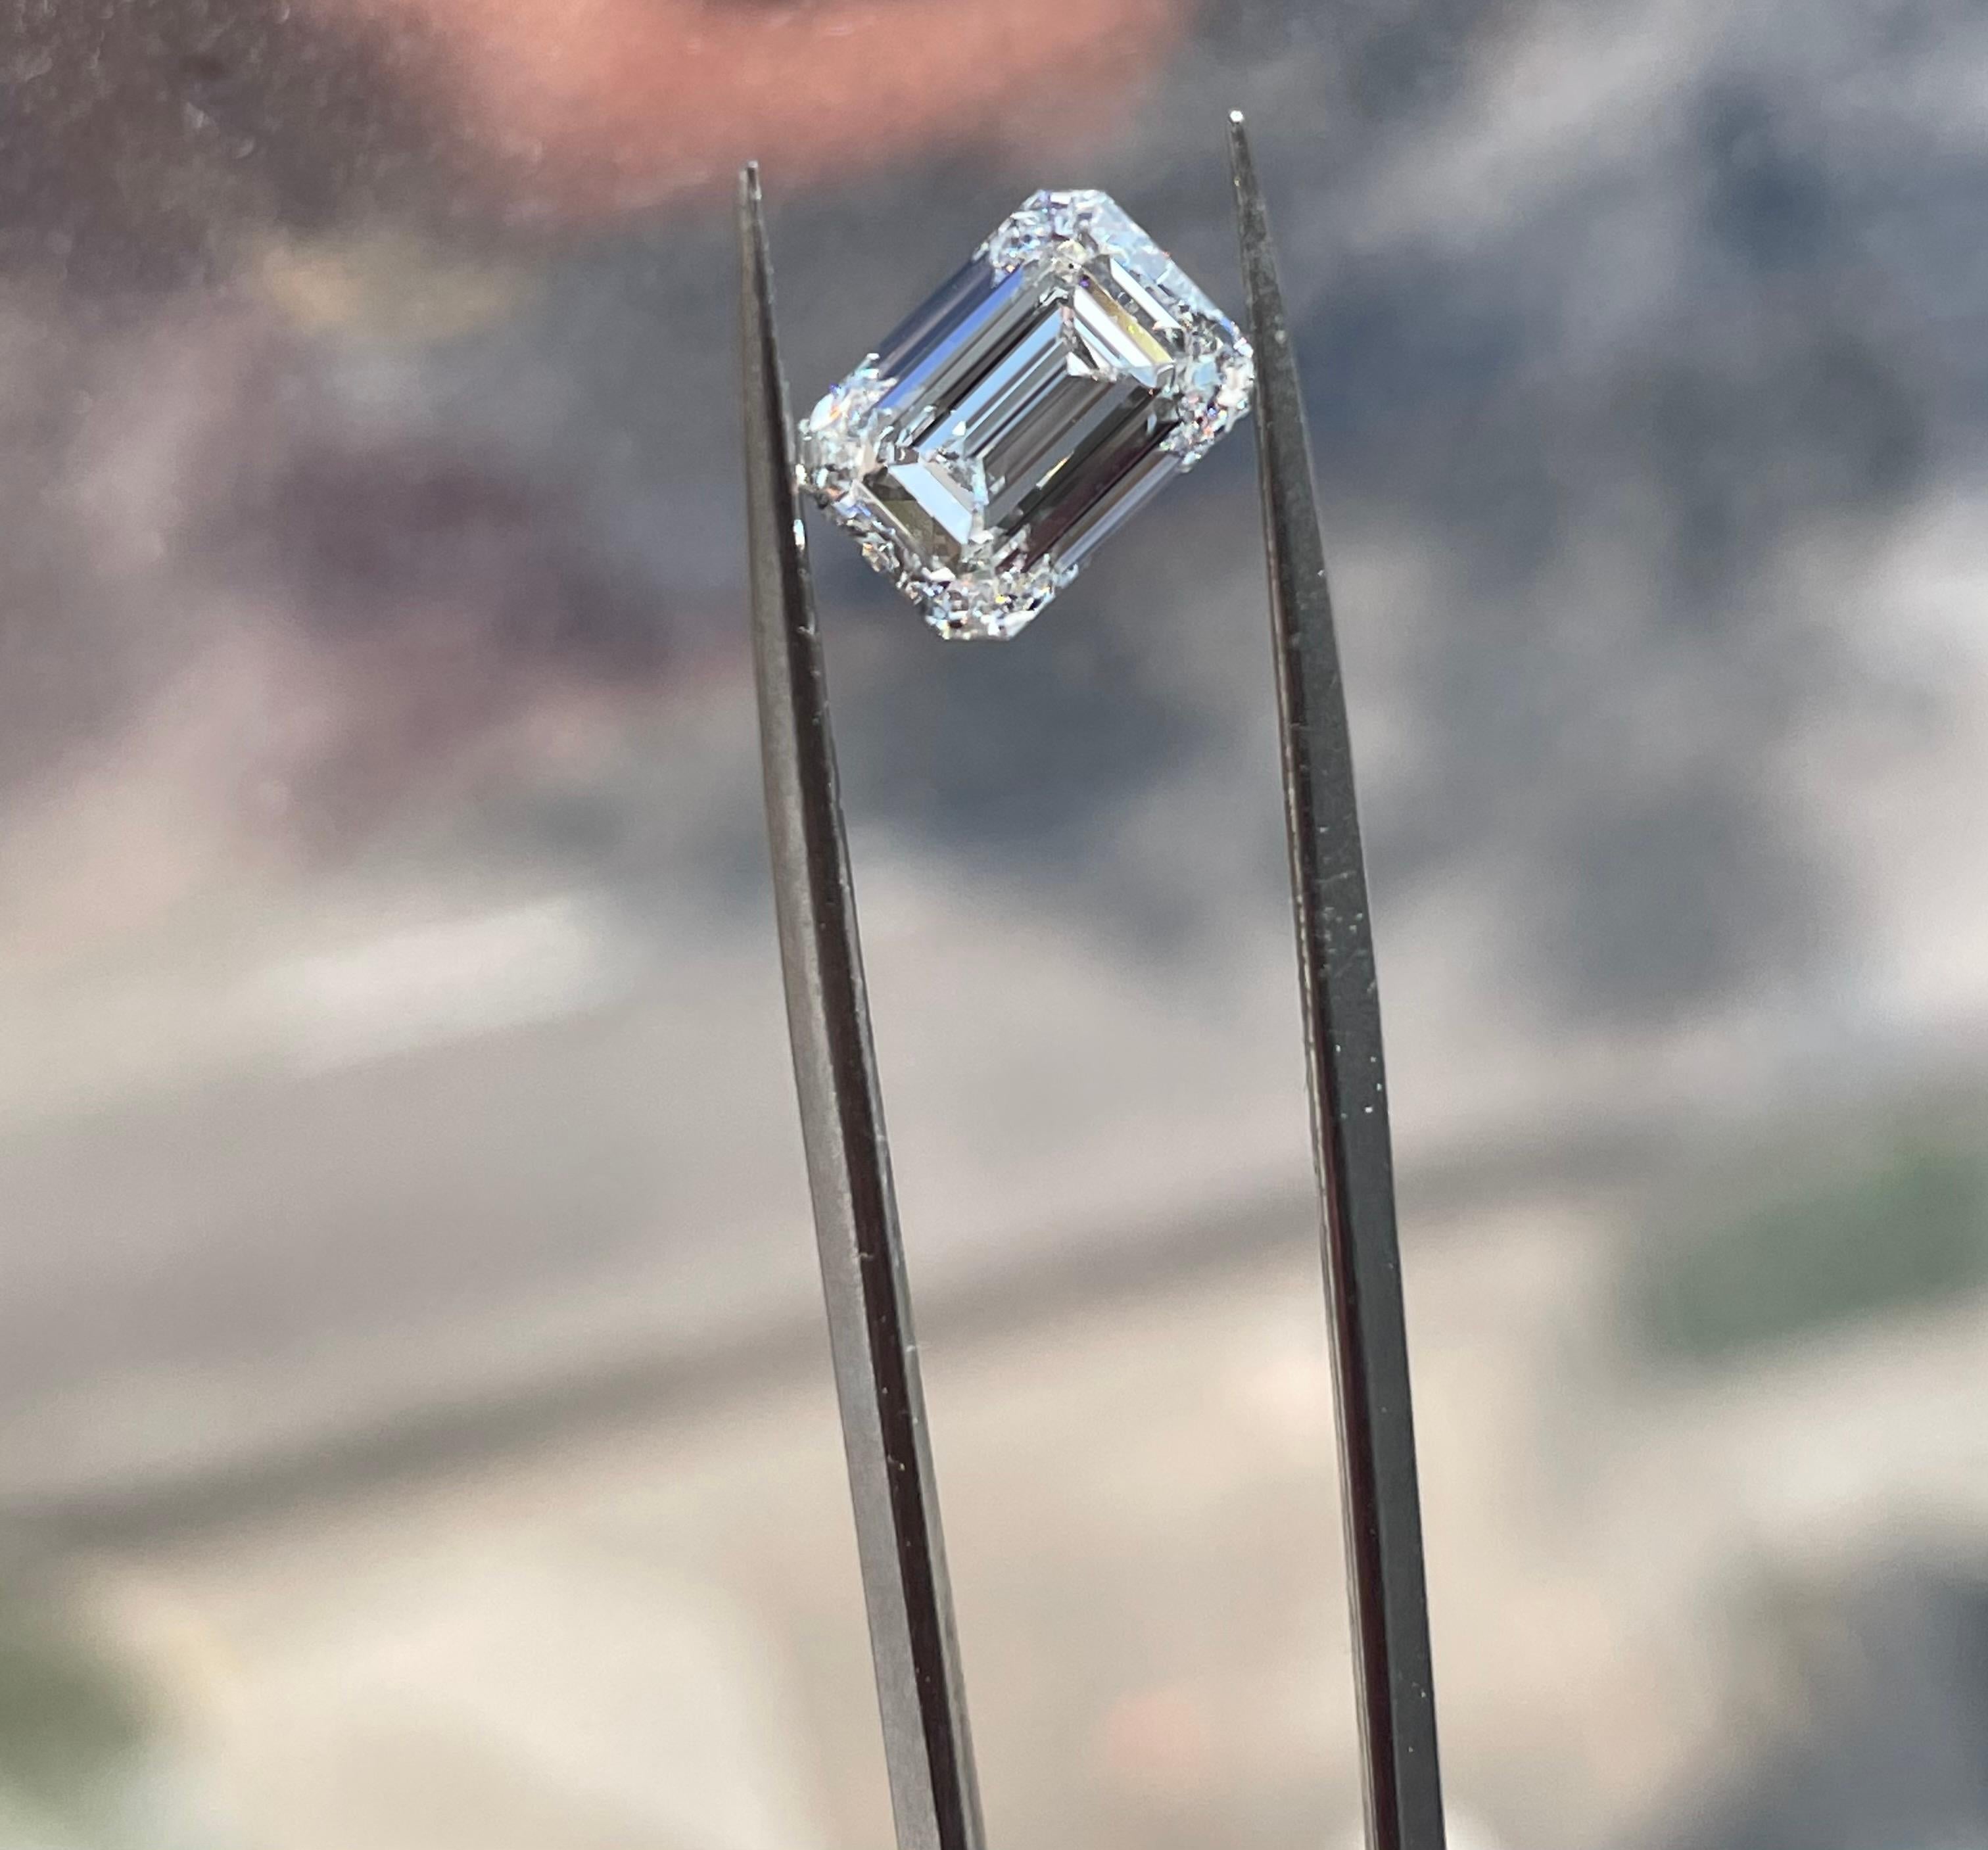 Un incroyable diamant libre de 2,01 ct de taille émeraude. Ce diamant est magnifique - blanc et brillant ! Elle est accompagnée de la certification originale du GIA.